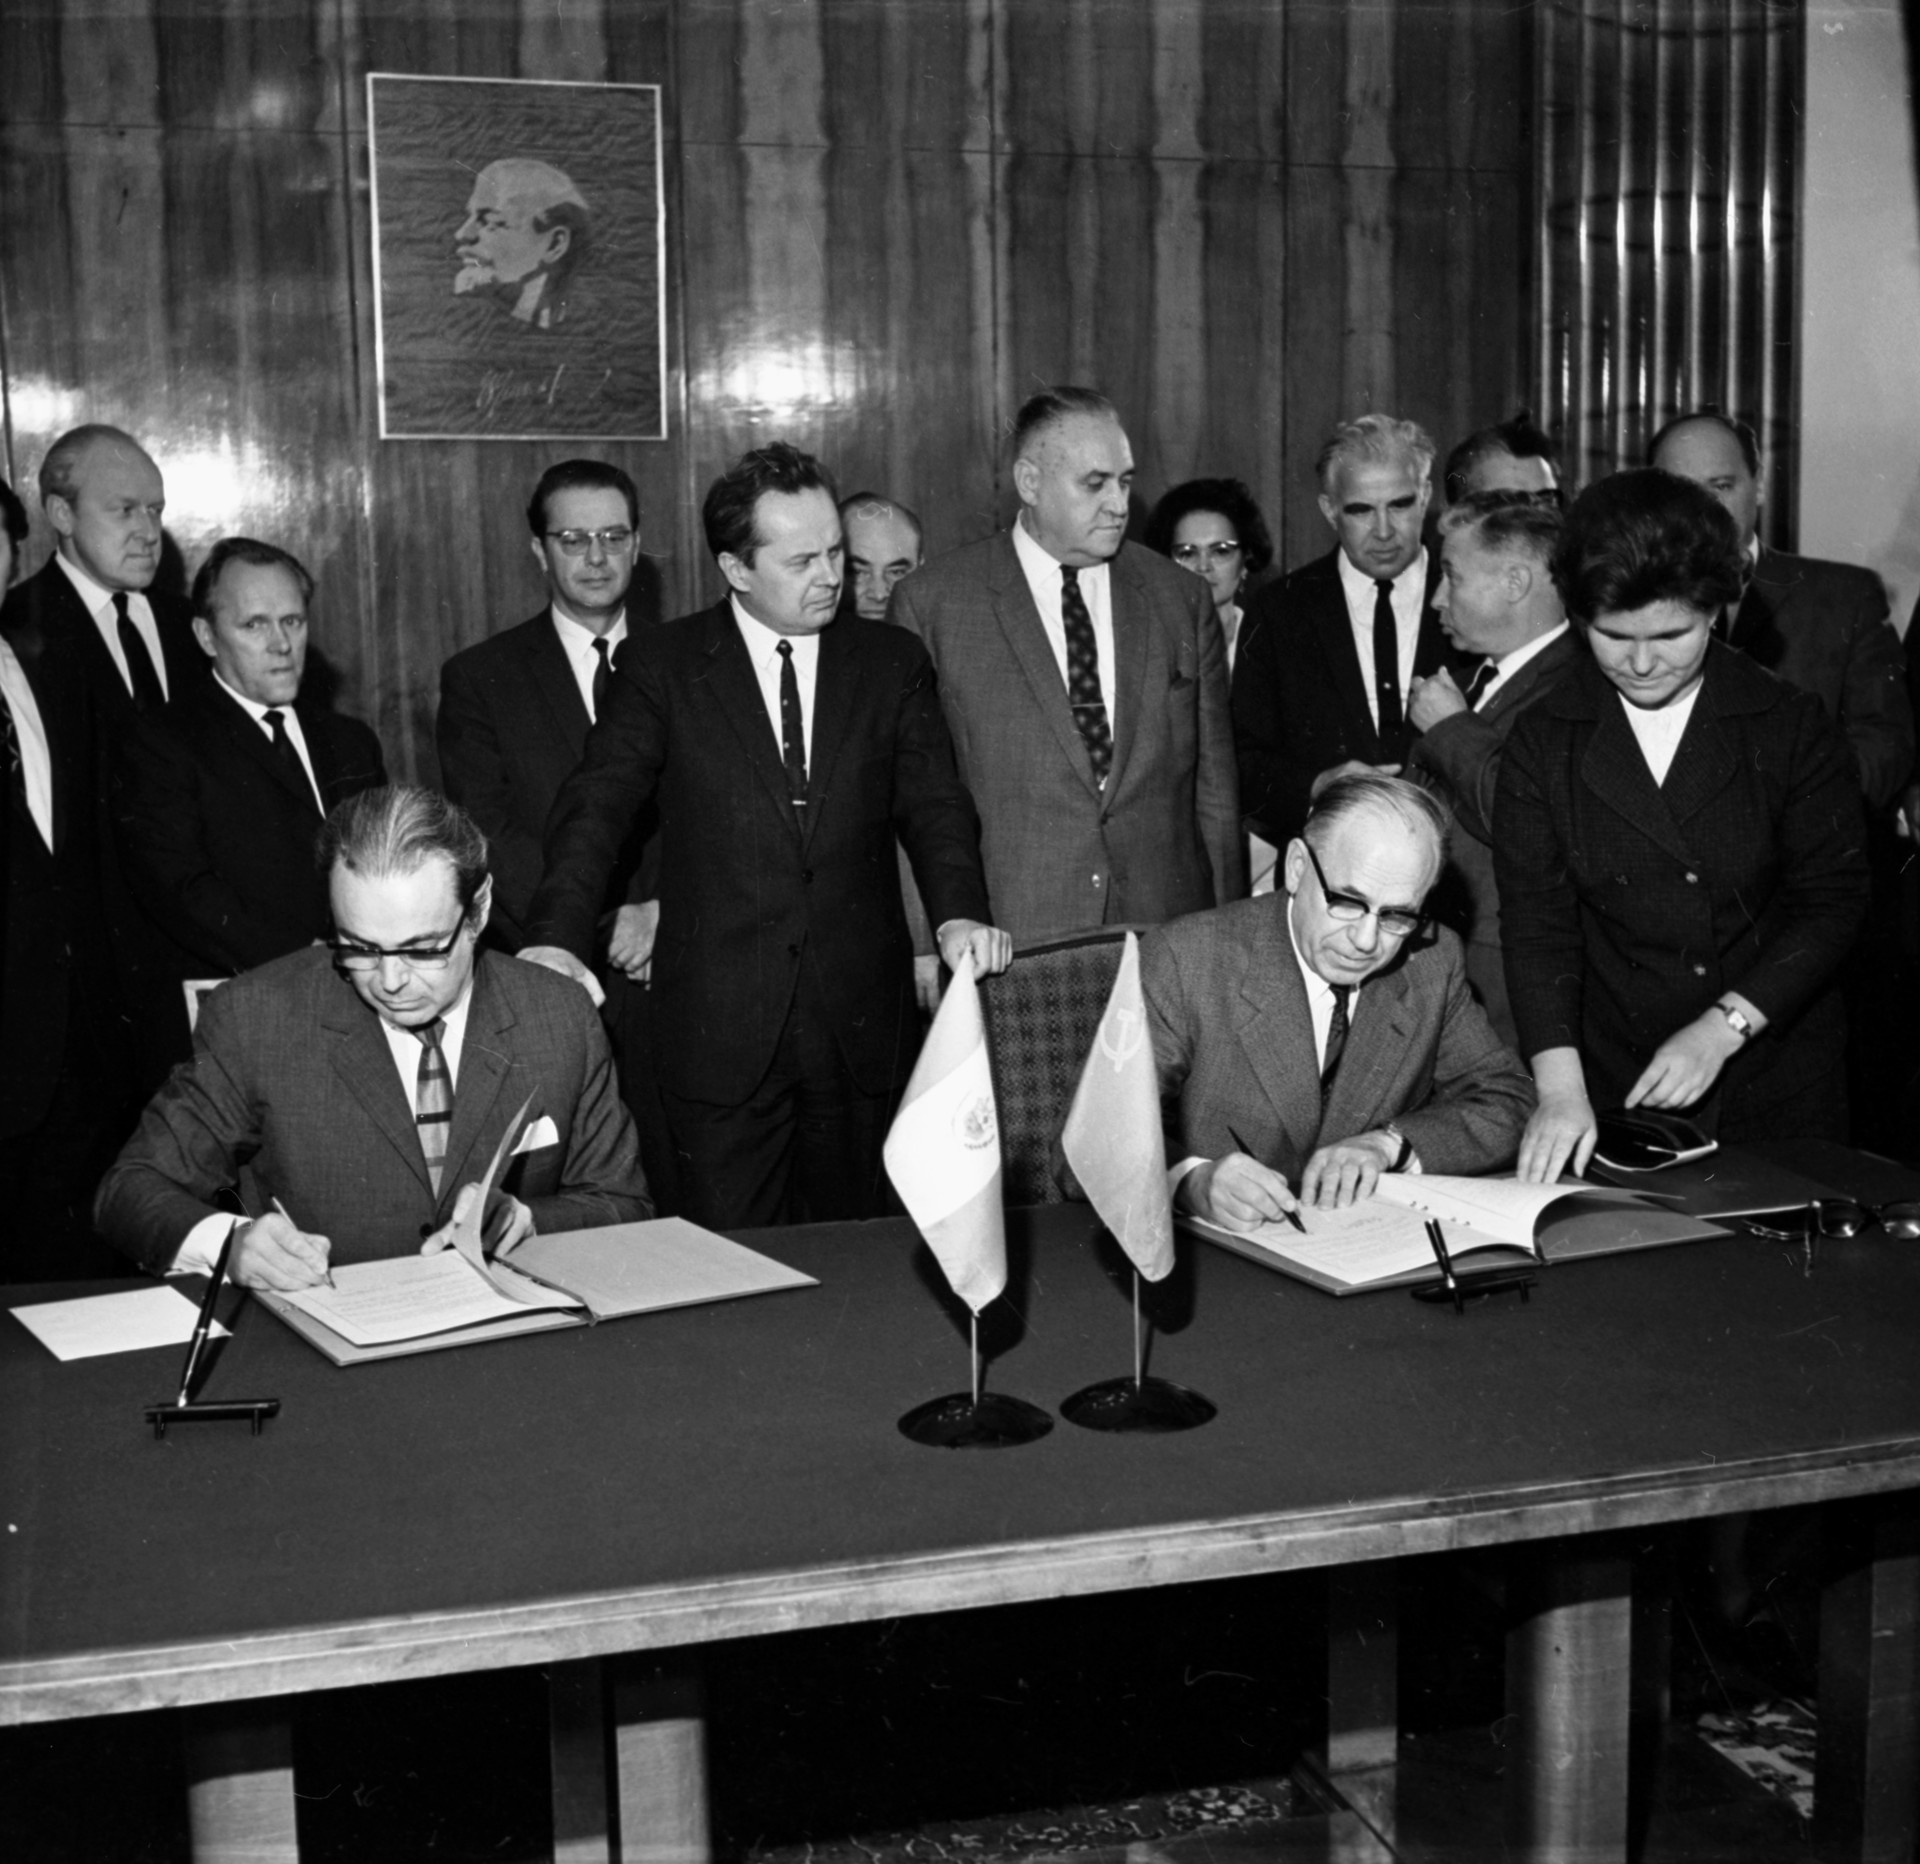 La firma del acuerdo comercial entre el Perú y la URSS. El embajador de Perú en la URSS, Javier Pérez de Cuéllar, y el primer viceministro del Comercio Exterior de la URSS, firman el acuerdo sobre el suministro de máquinas y equipos, Moscú. 18 de agosto de 1970.